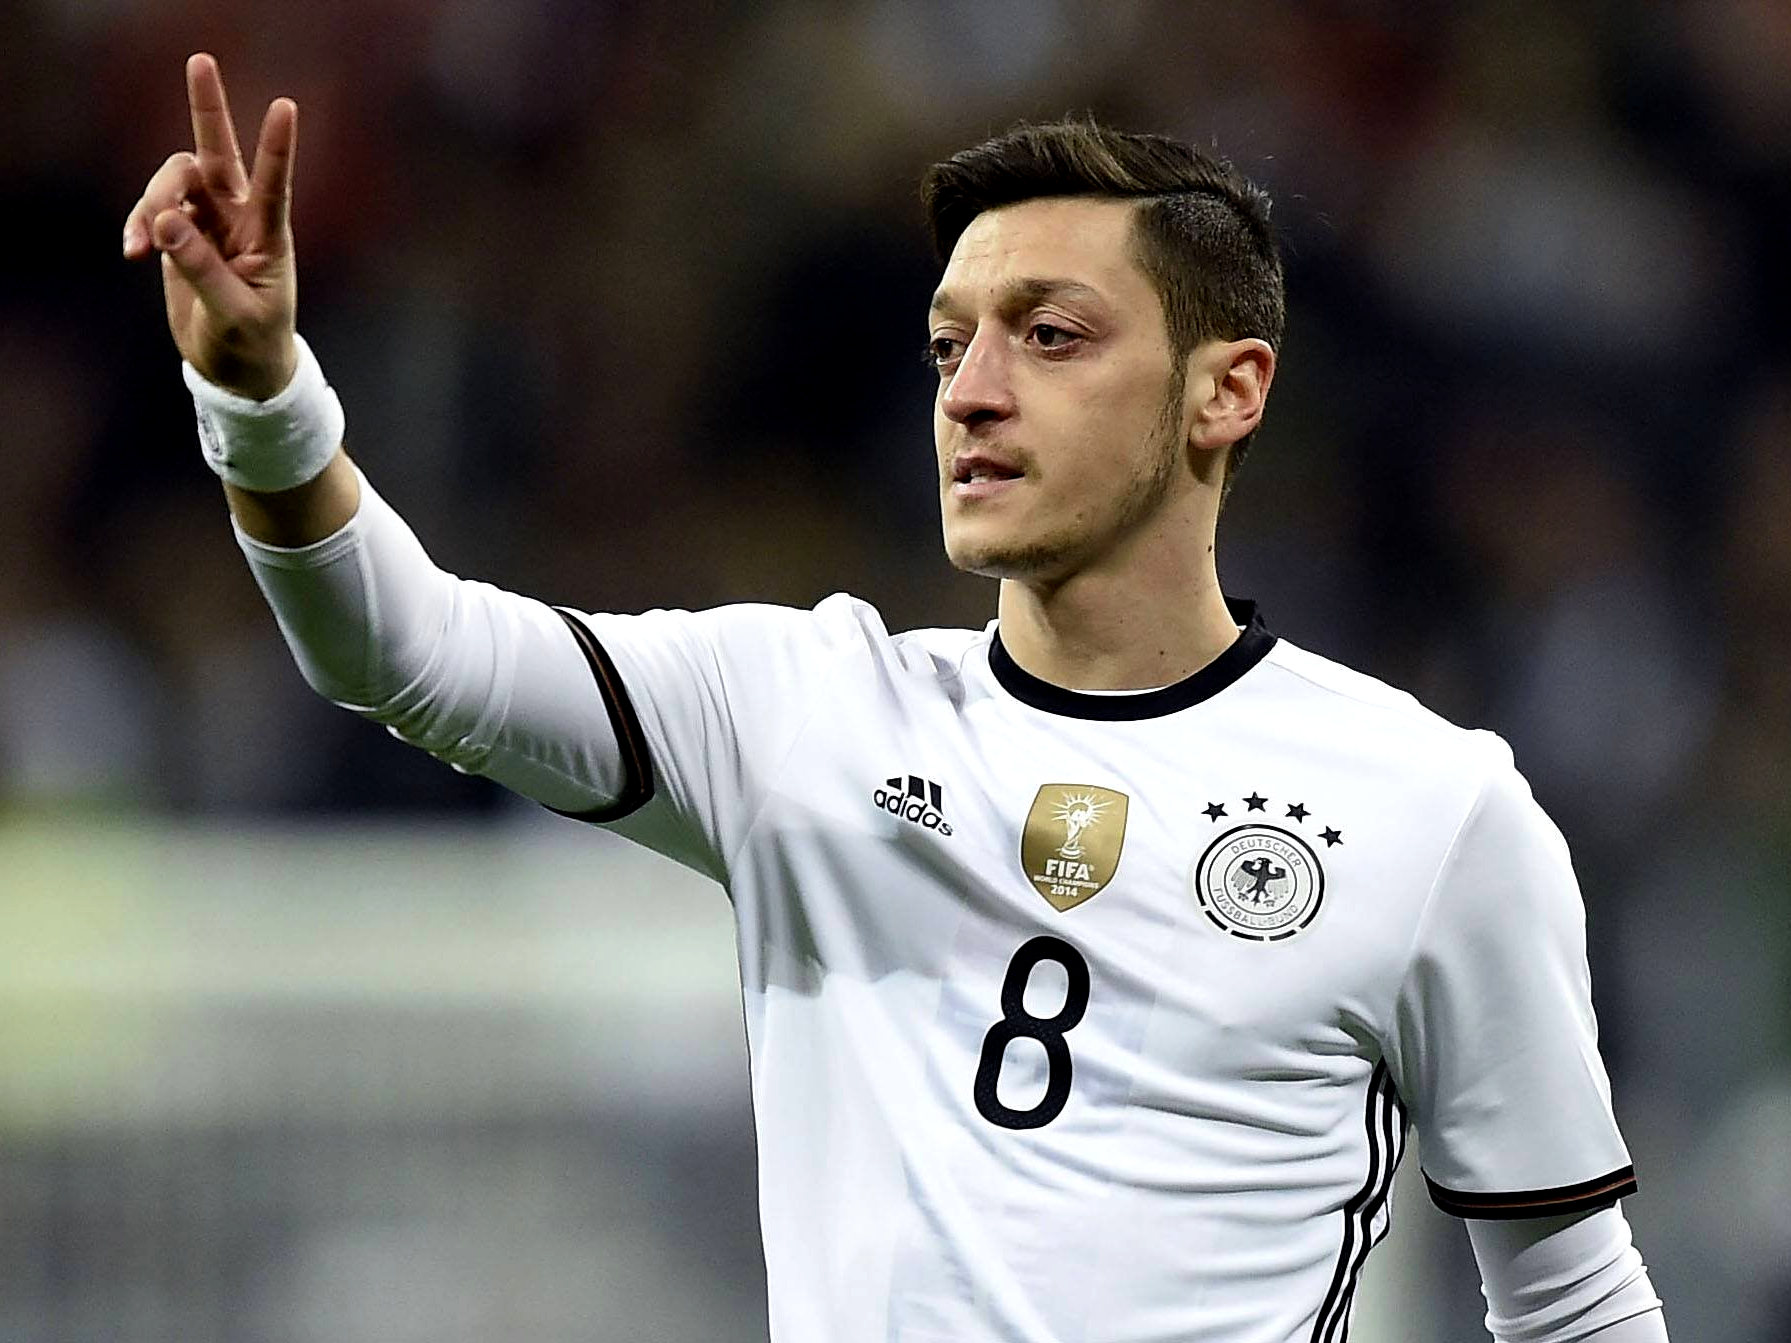 Der Fall Mesut Özil: Die wichtigsten Fragen und Antworten - Eurosport